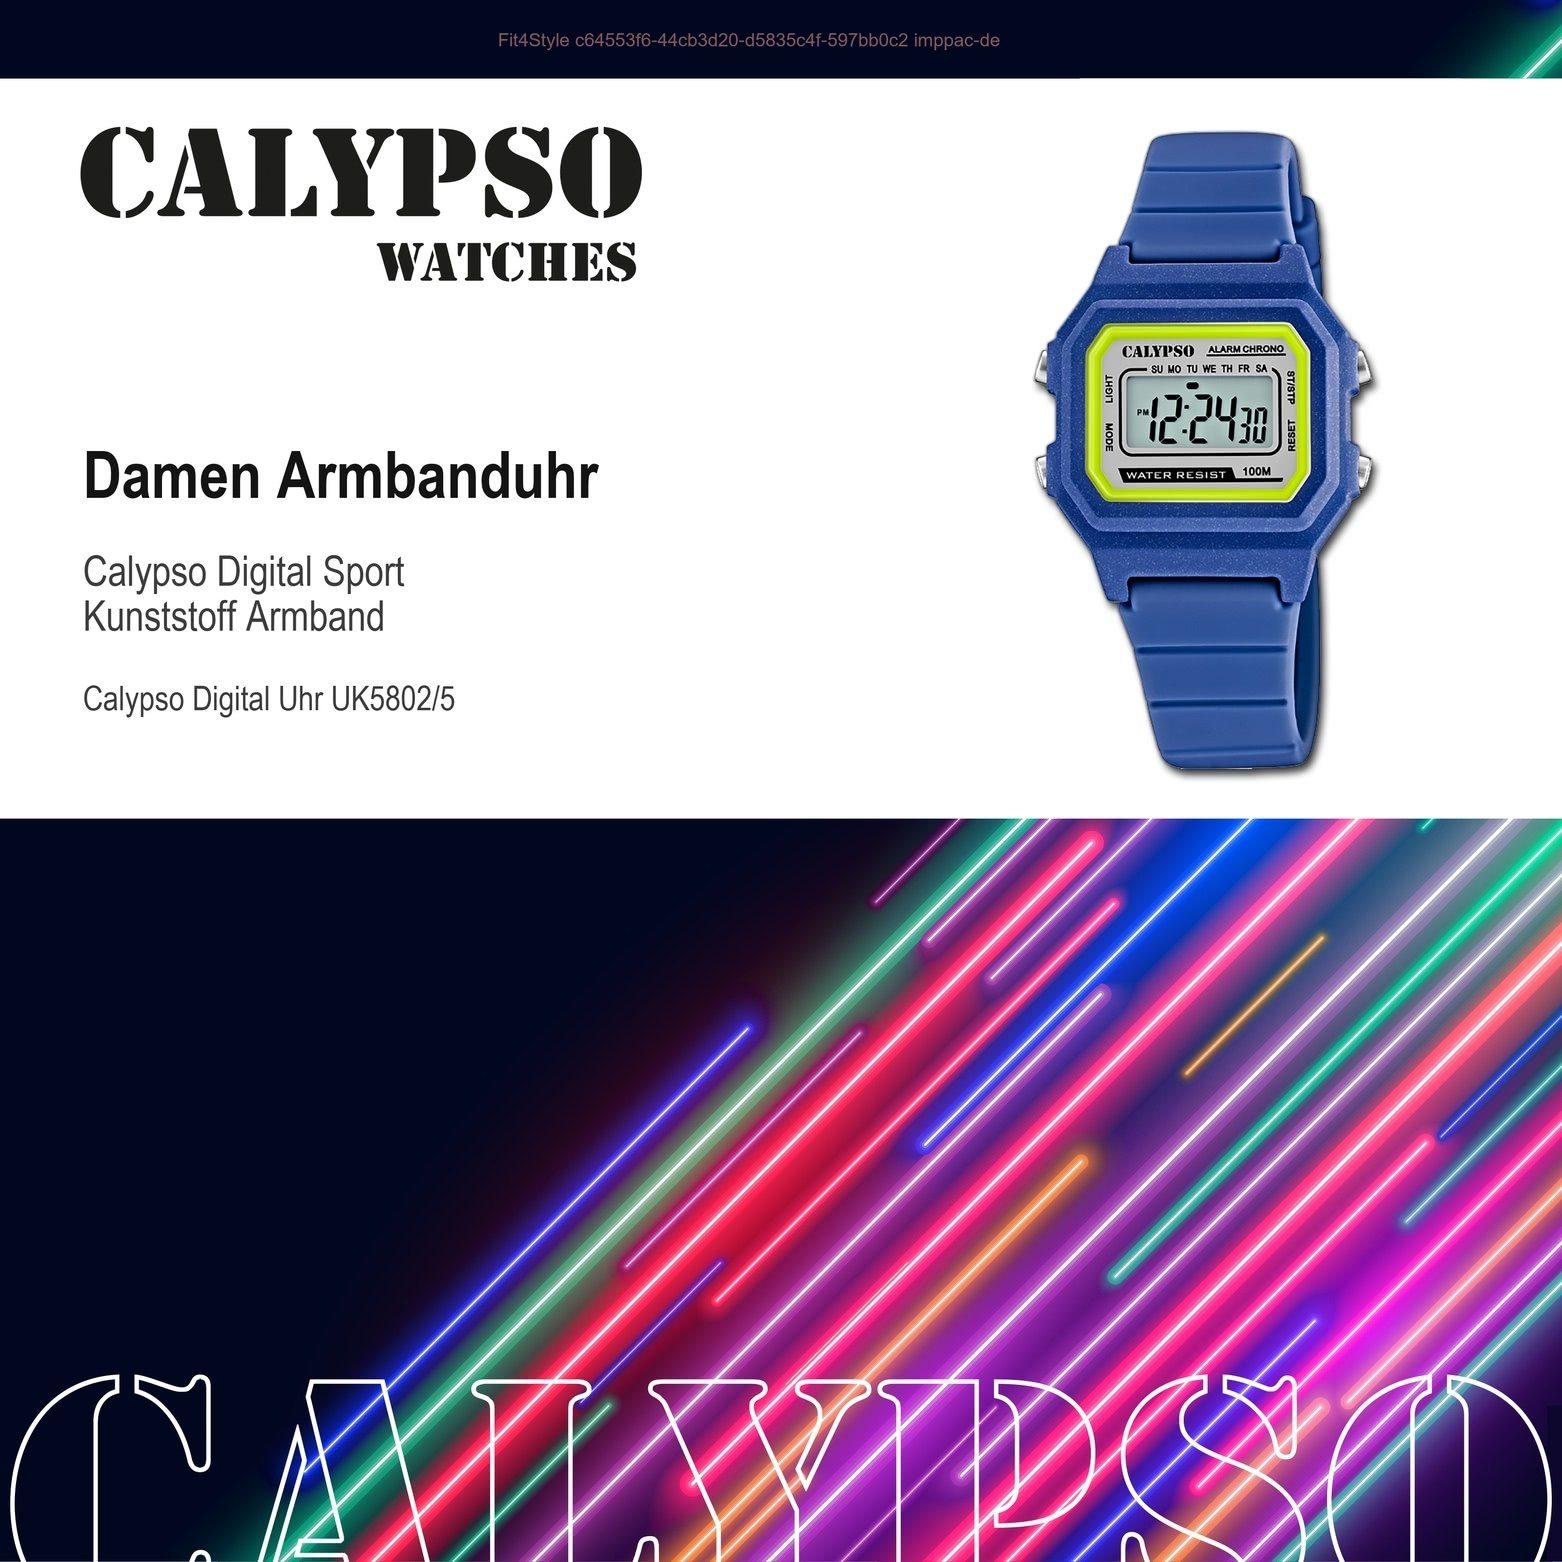 CALYPSO WATCHES Digitaluhr Calypso Unisex Damen, Kunststoffband, mittel K5802/5, eckig, Digital Sport-Style (ca. 33mm) Herrenuhr Uhr